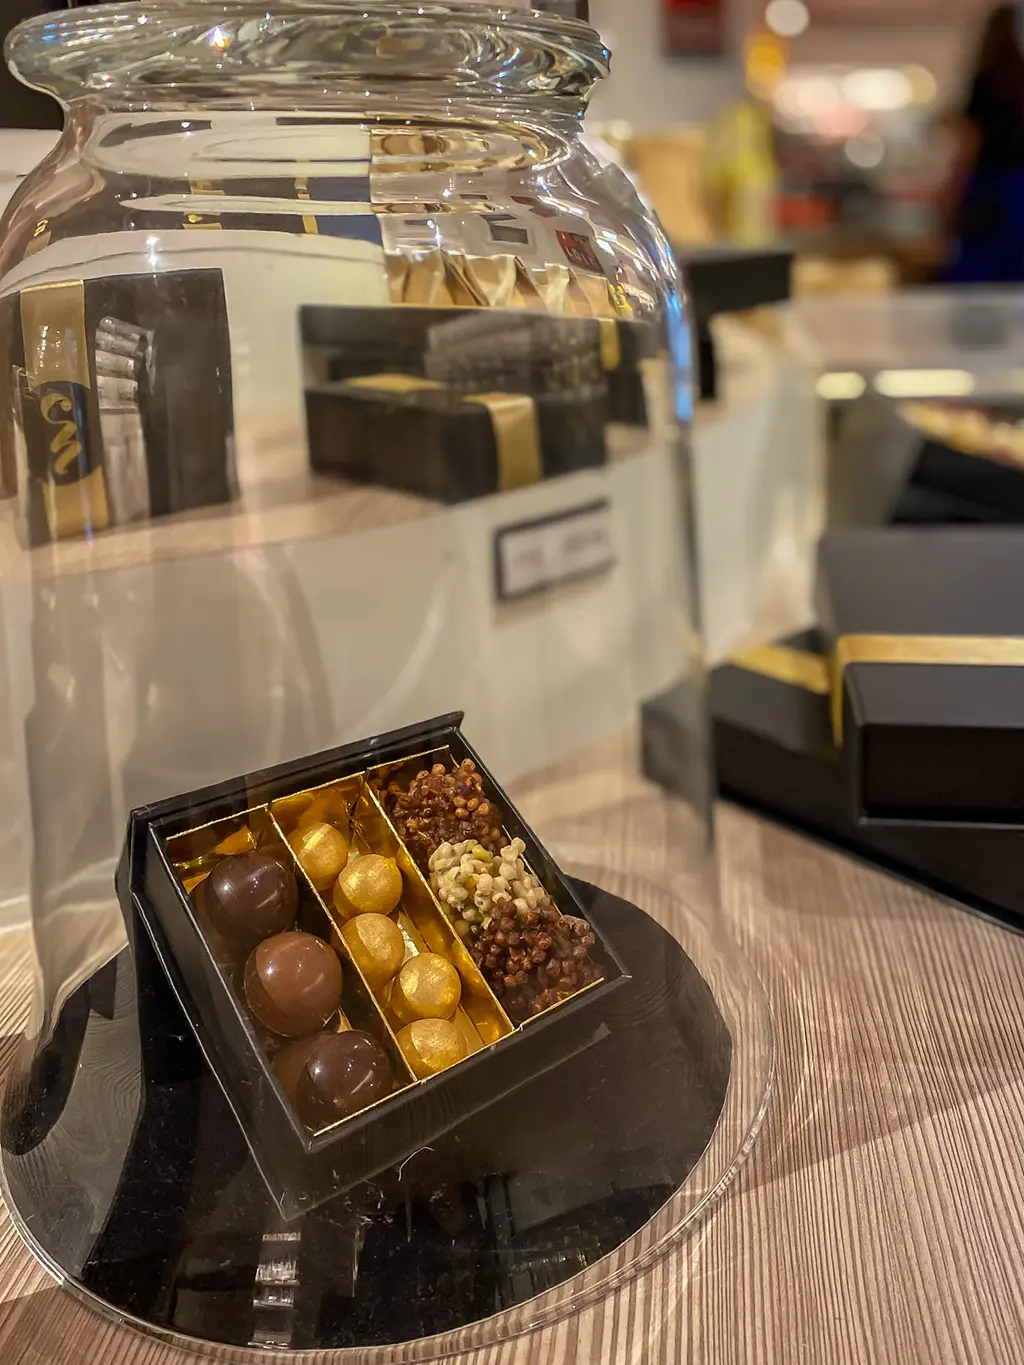 Notre avis sur Chocolate nation : Le plus grand musée du chocolat belge au monde